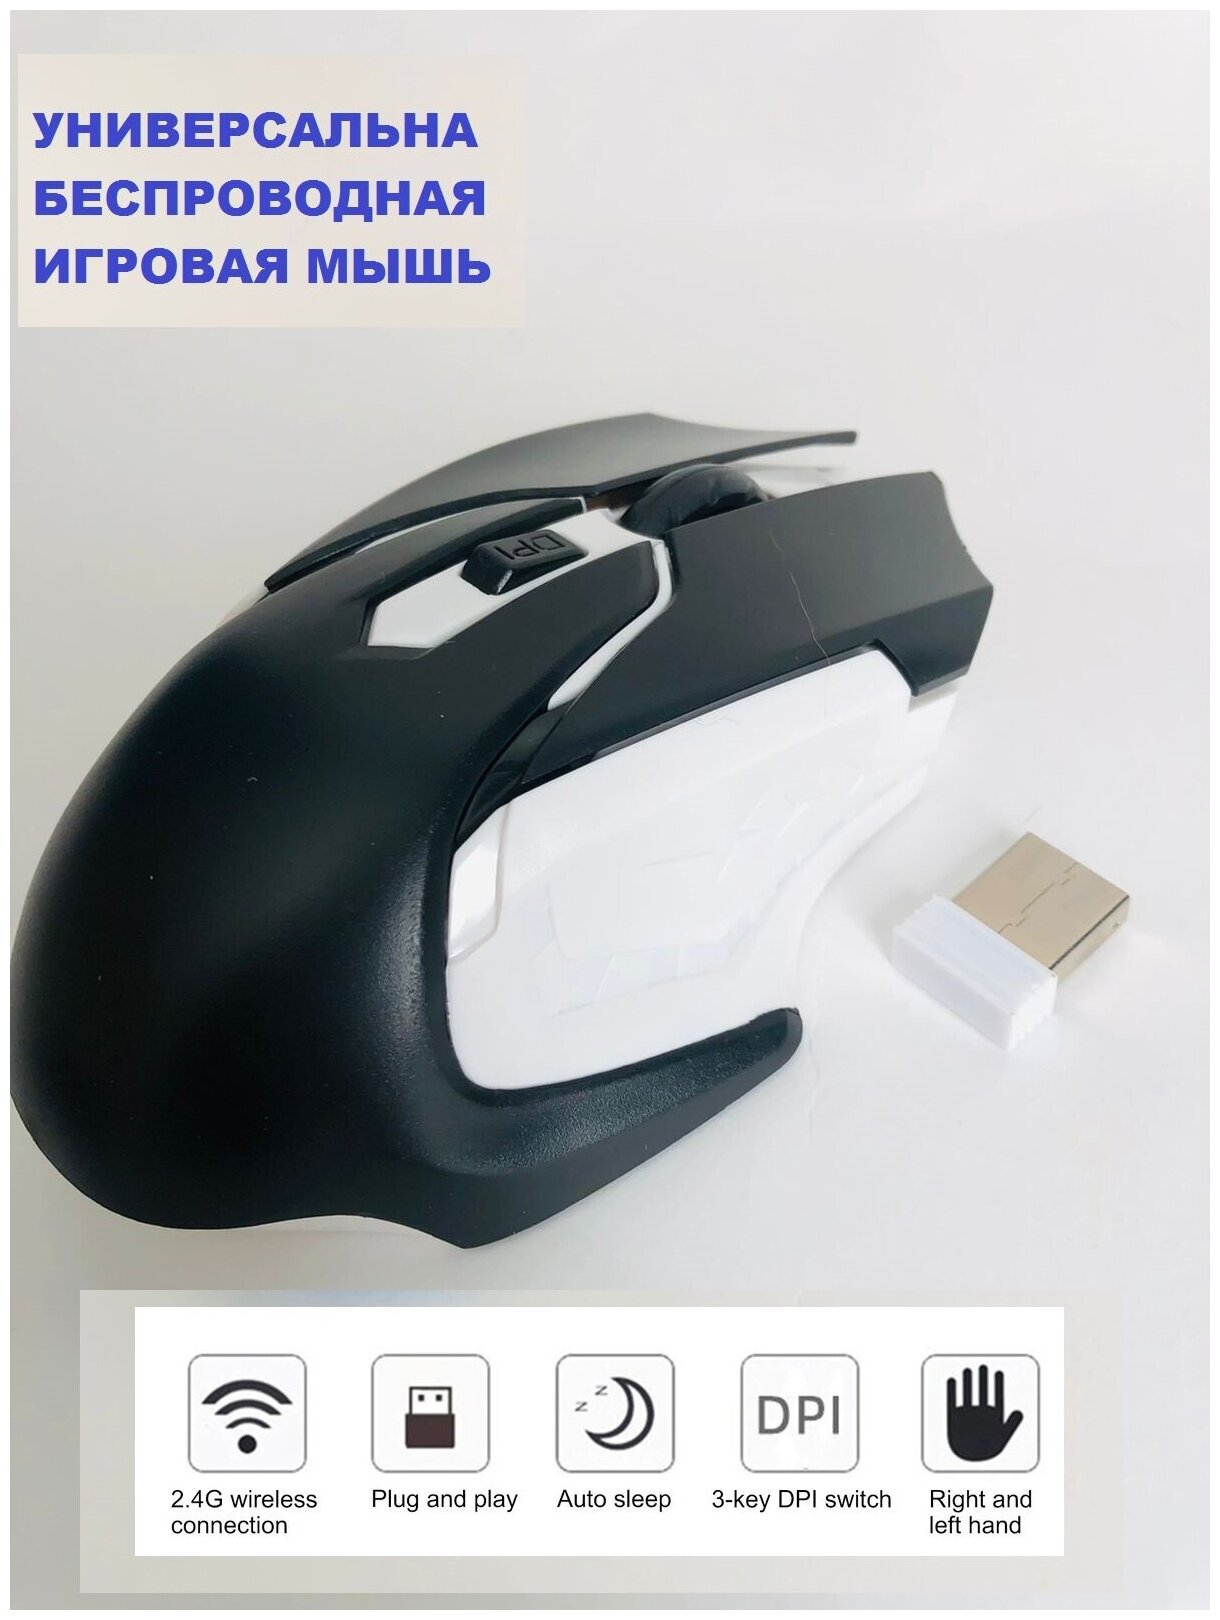 Игровая беспроводная мышь оптическая USB черная , игровая мышка, мыши